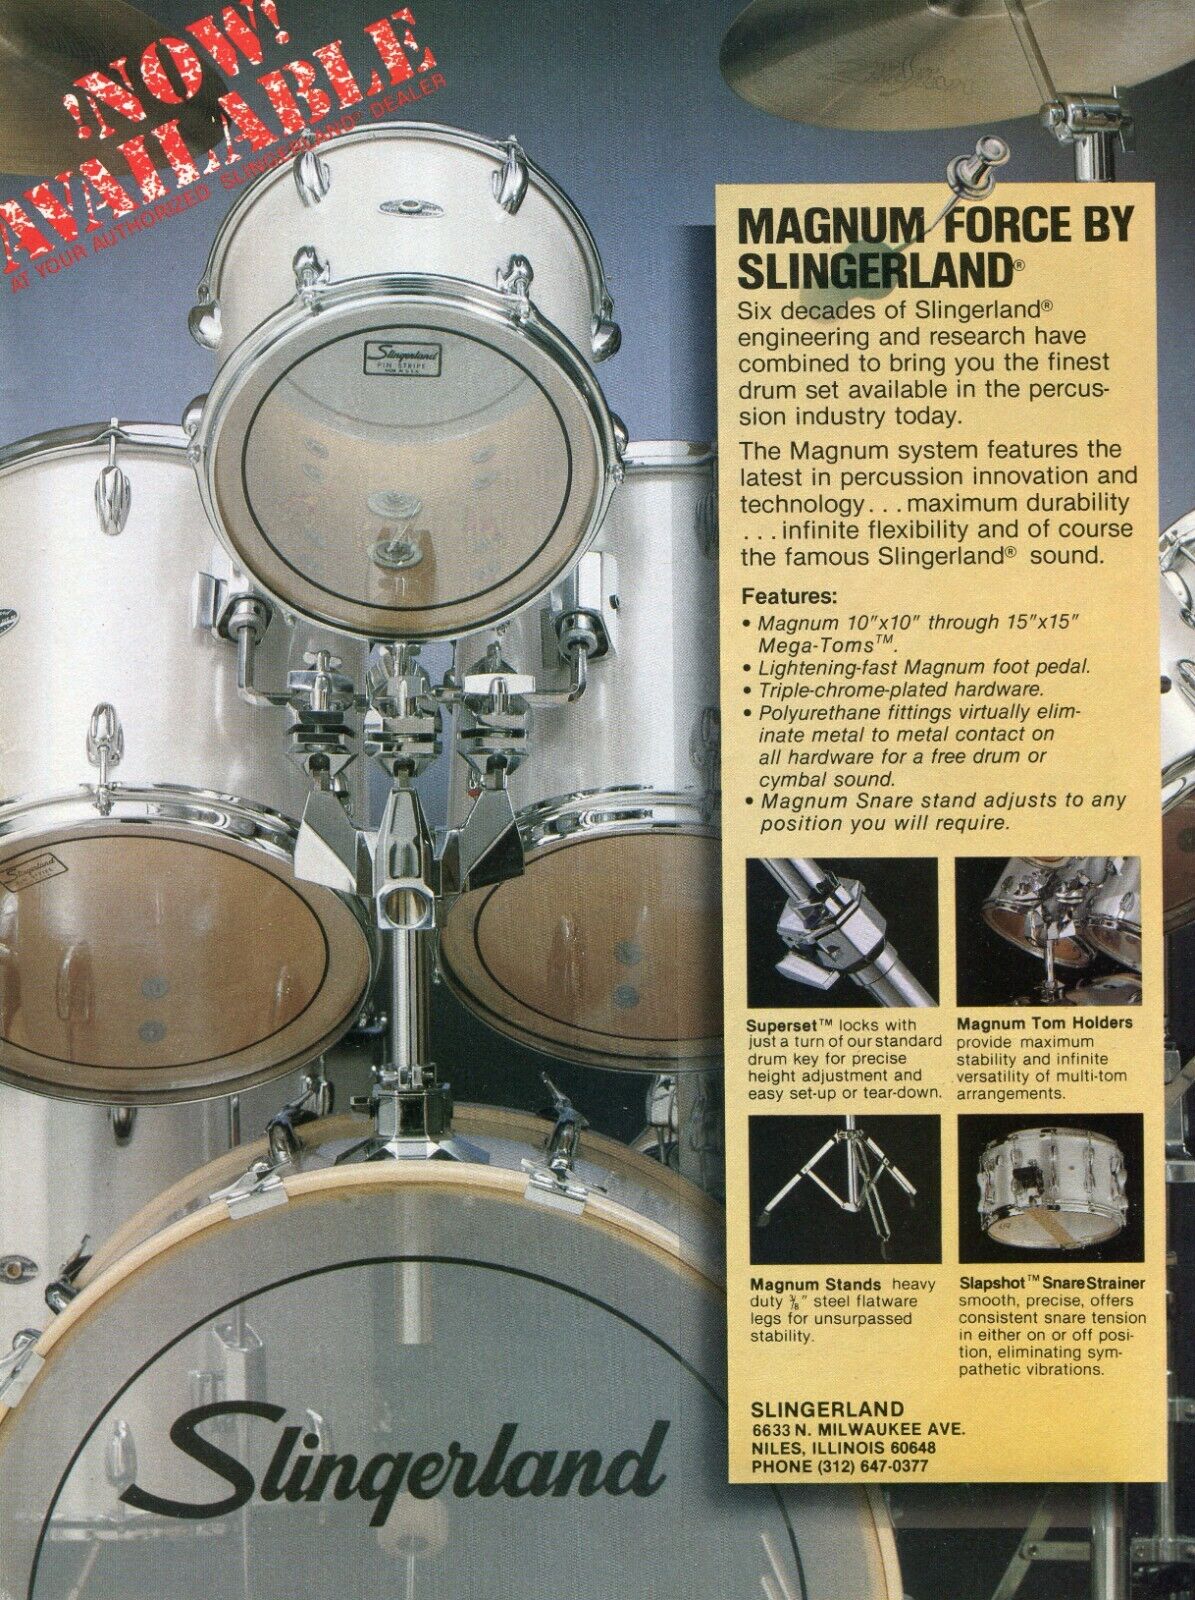 1983 Print Ad of Slingerland Magnum Force Drum Kit